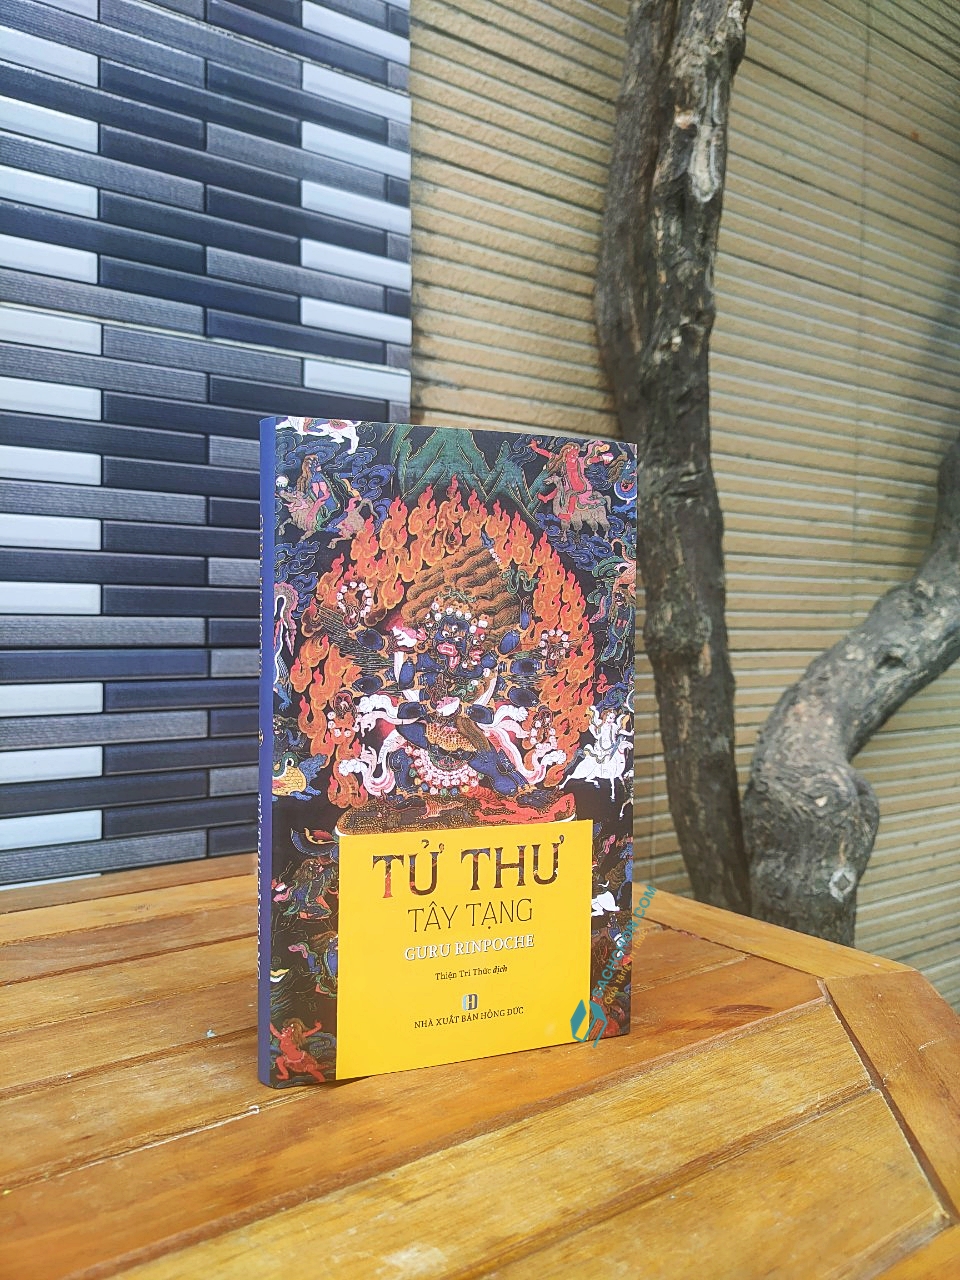 Tử Thư Tây Tạng - Quyển Kinh Thư Kinh Điển của Phật giáo Tây Tạng